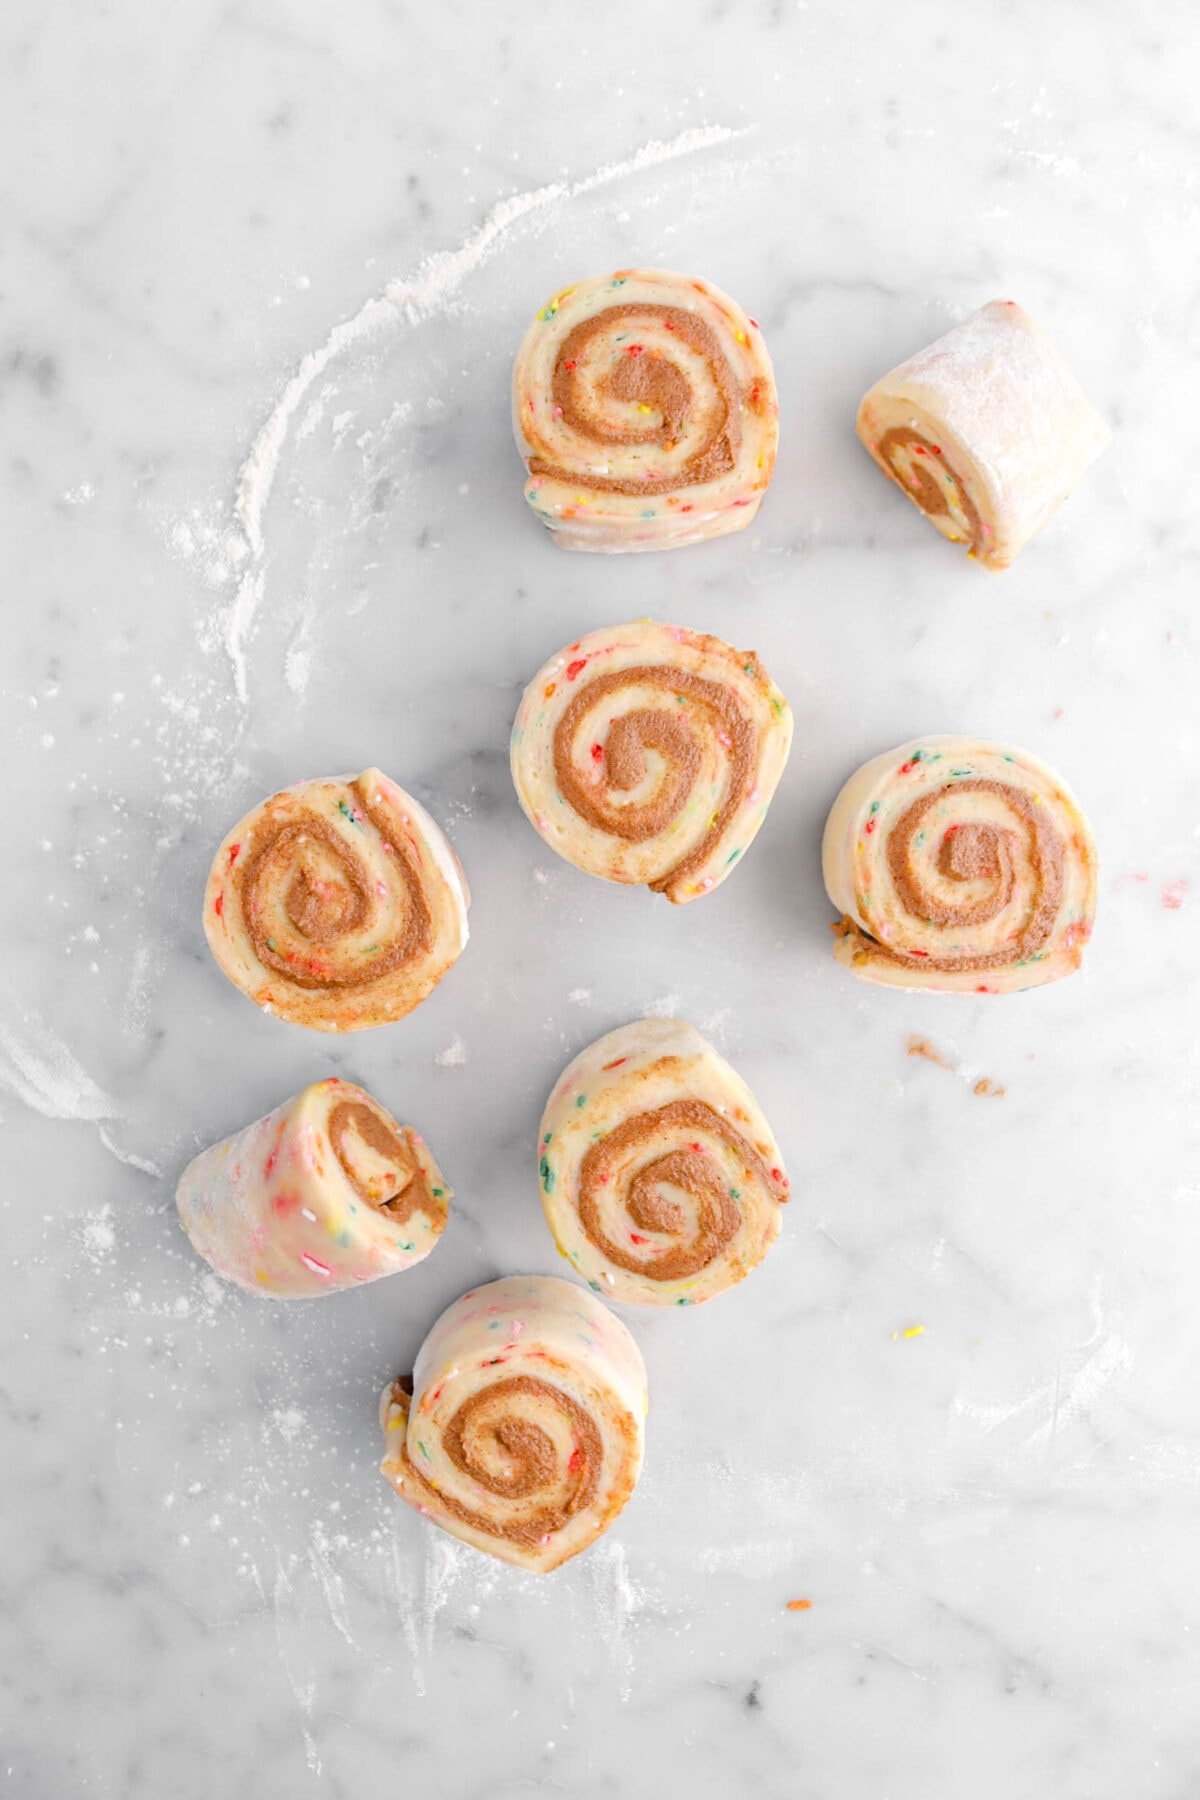 eight unbaked cinnamon rolls on marble surface.